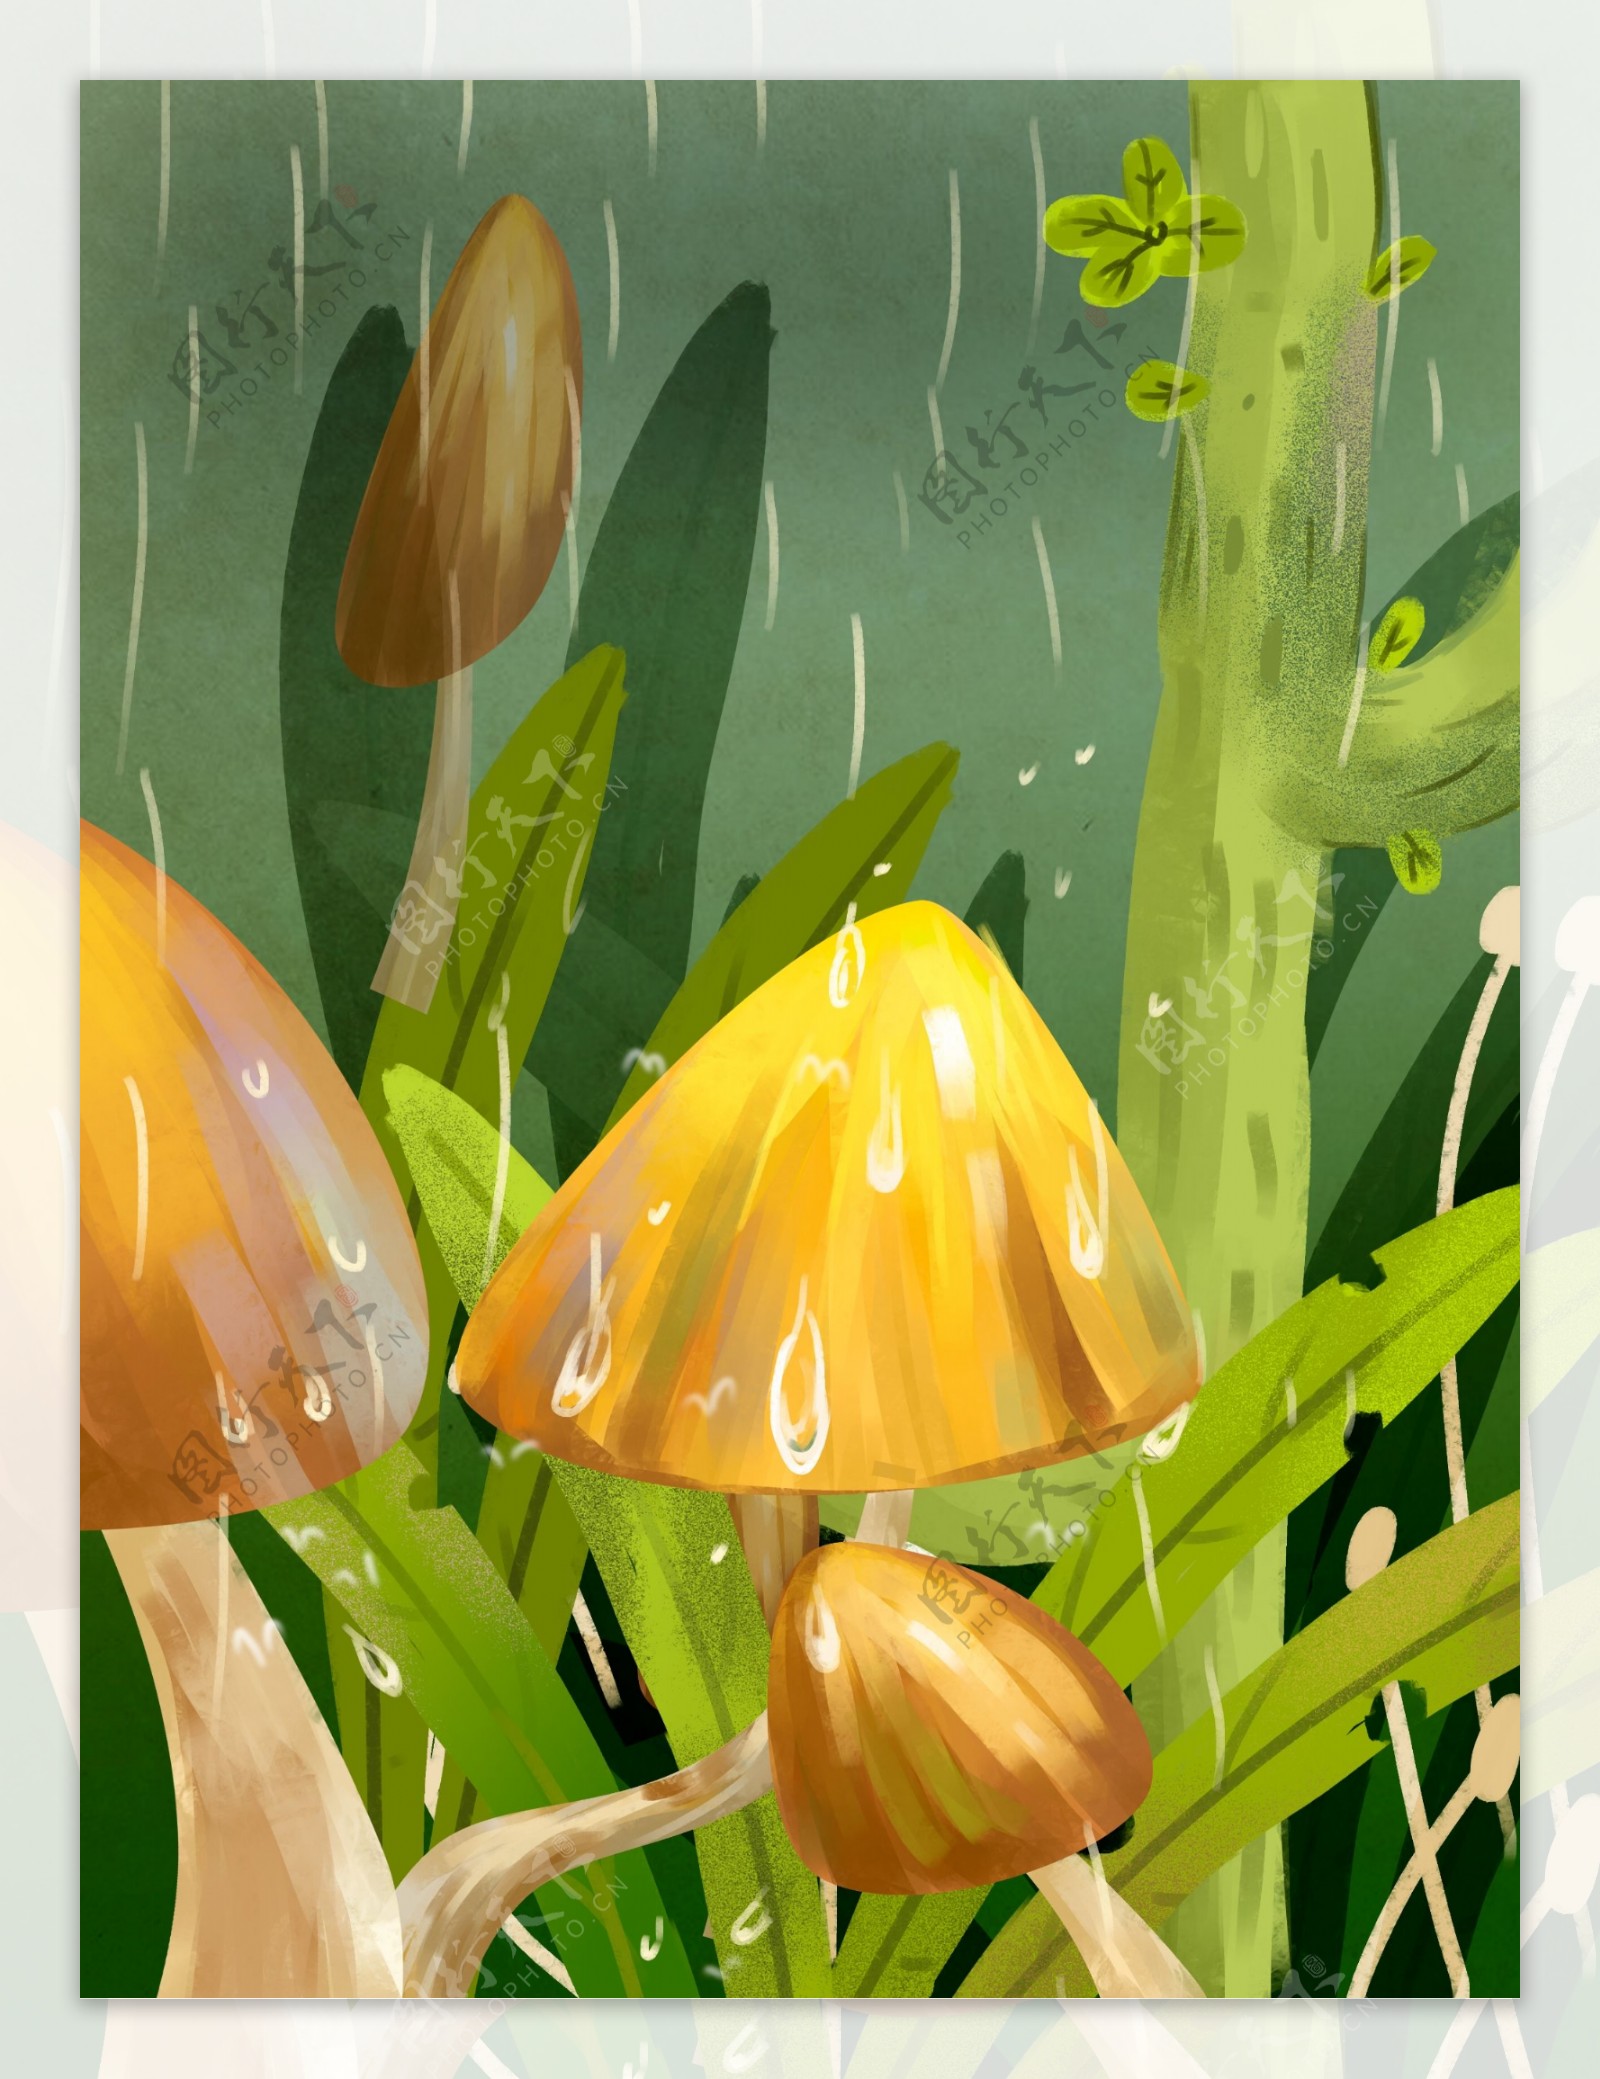 春季下雨草地蘑菇背景素材